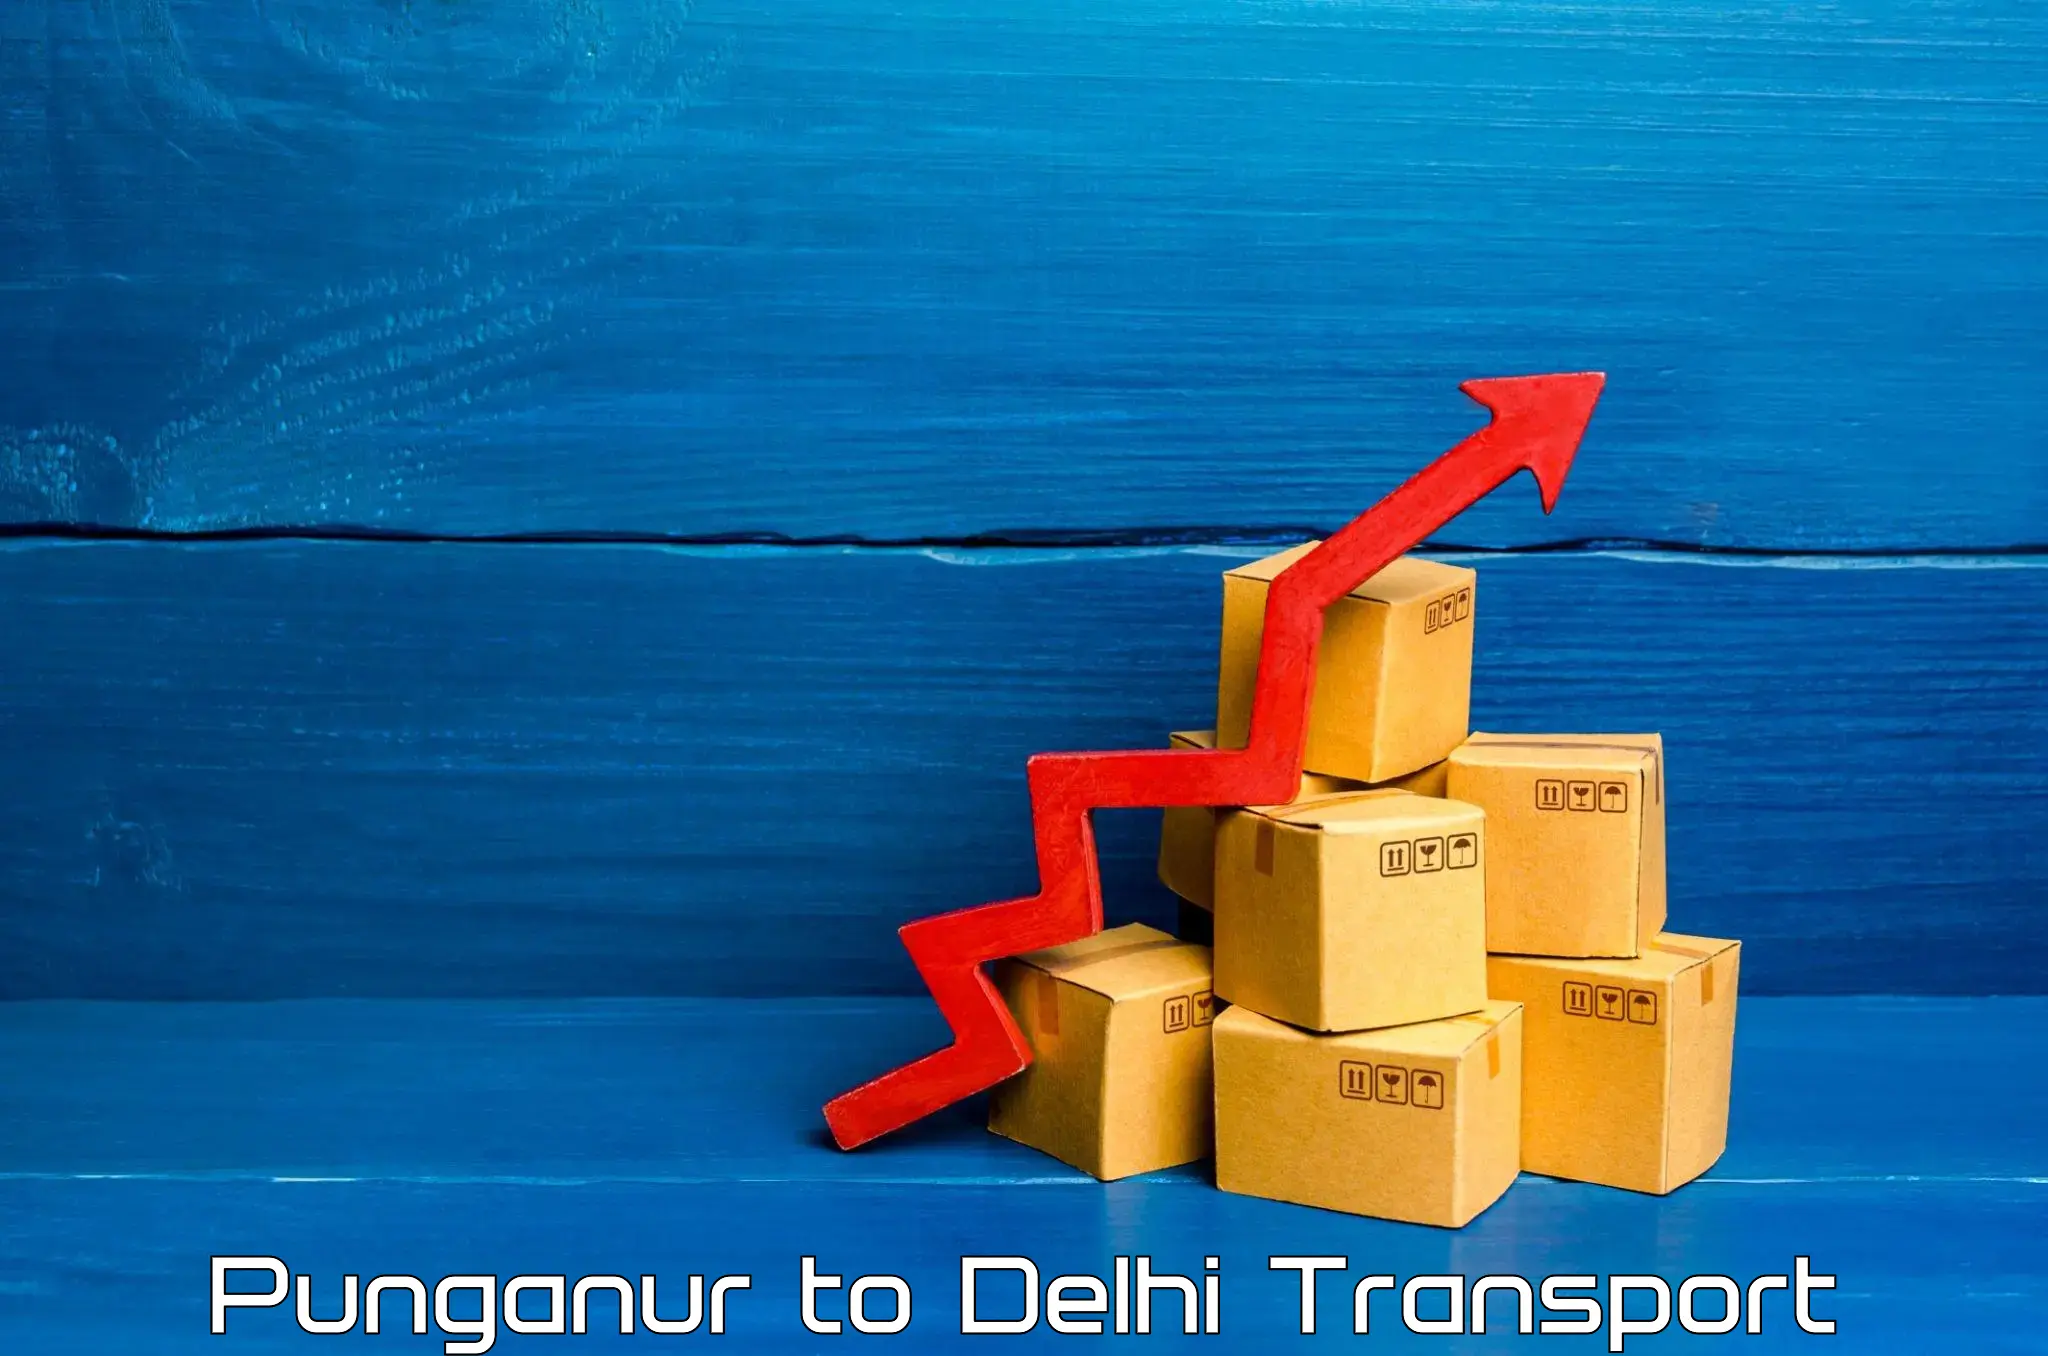 Online transport service Punganur to Delhi